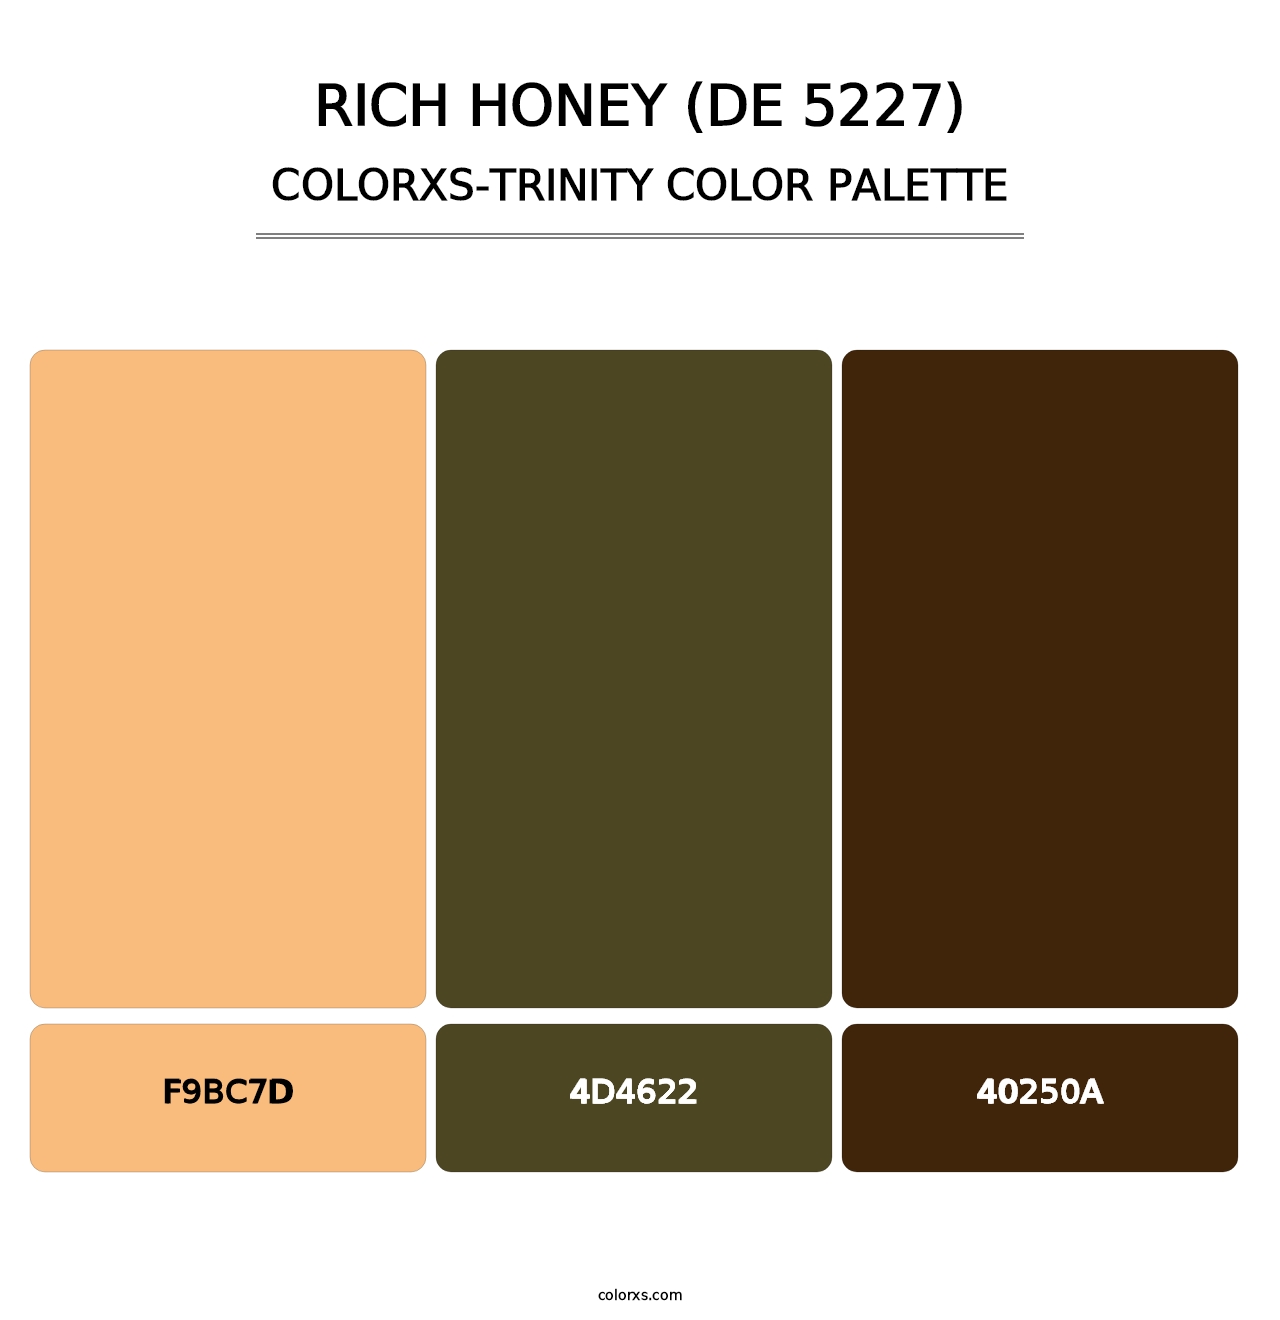 Rich Honey (DE 5227) - Colorxs Trinity Palette